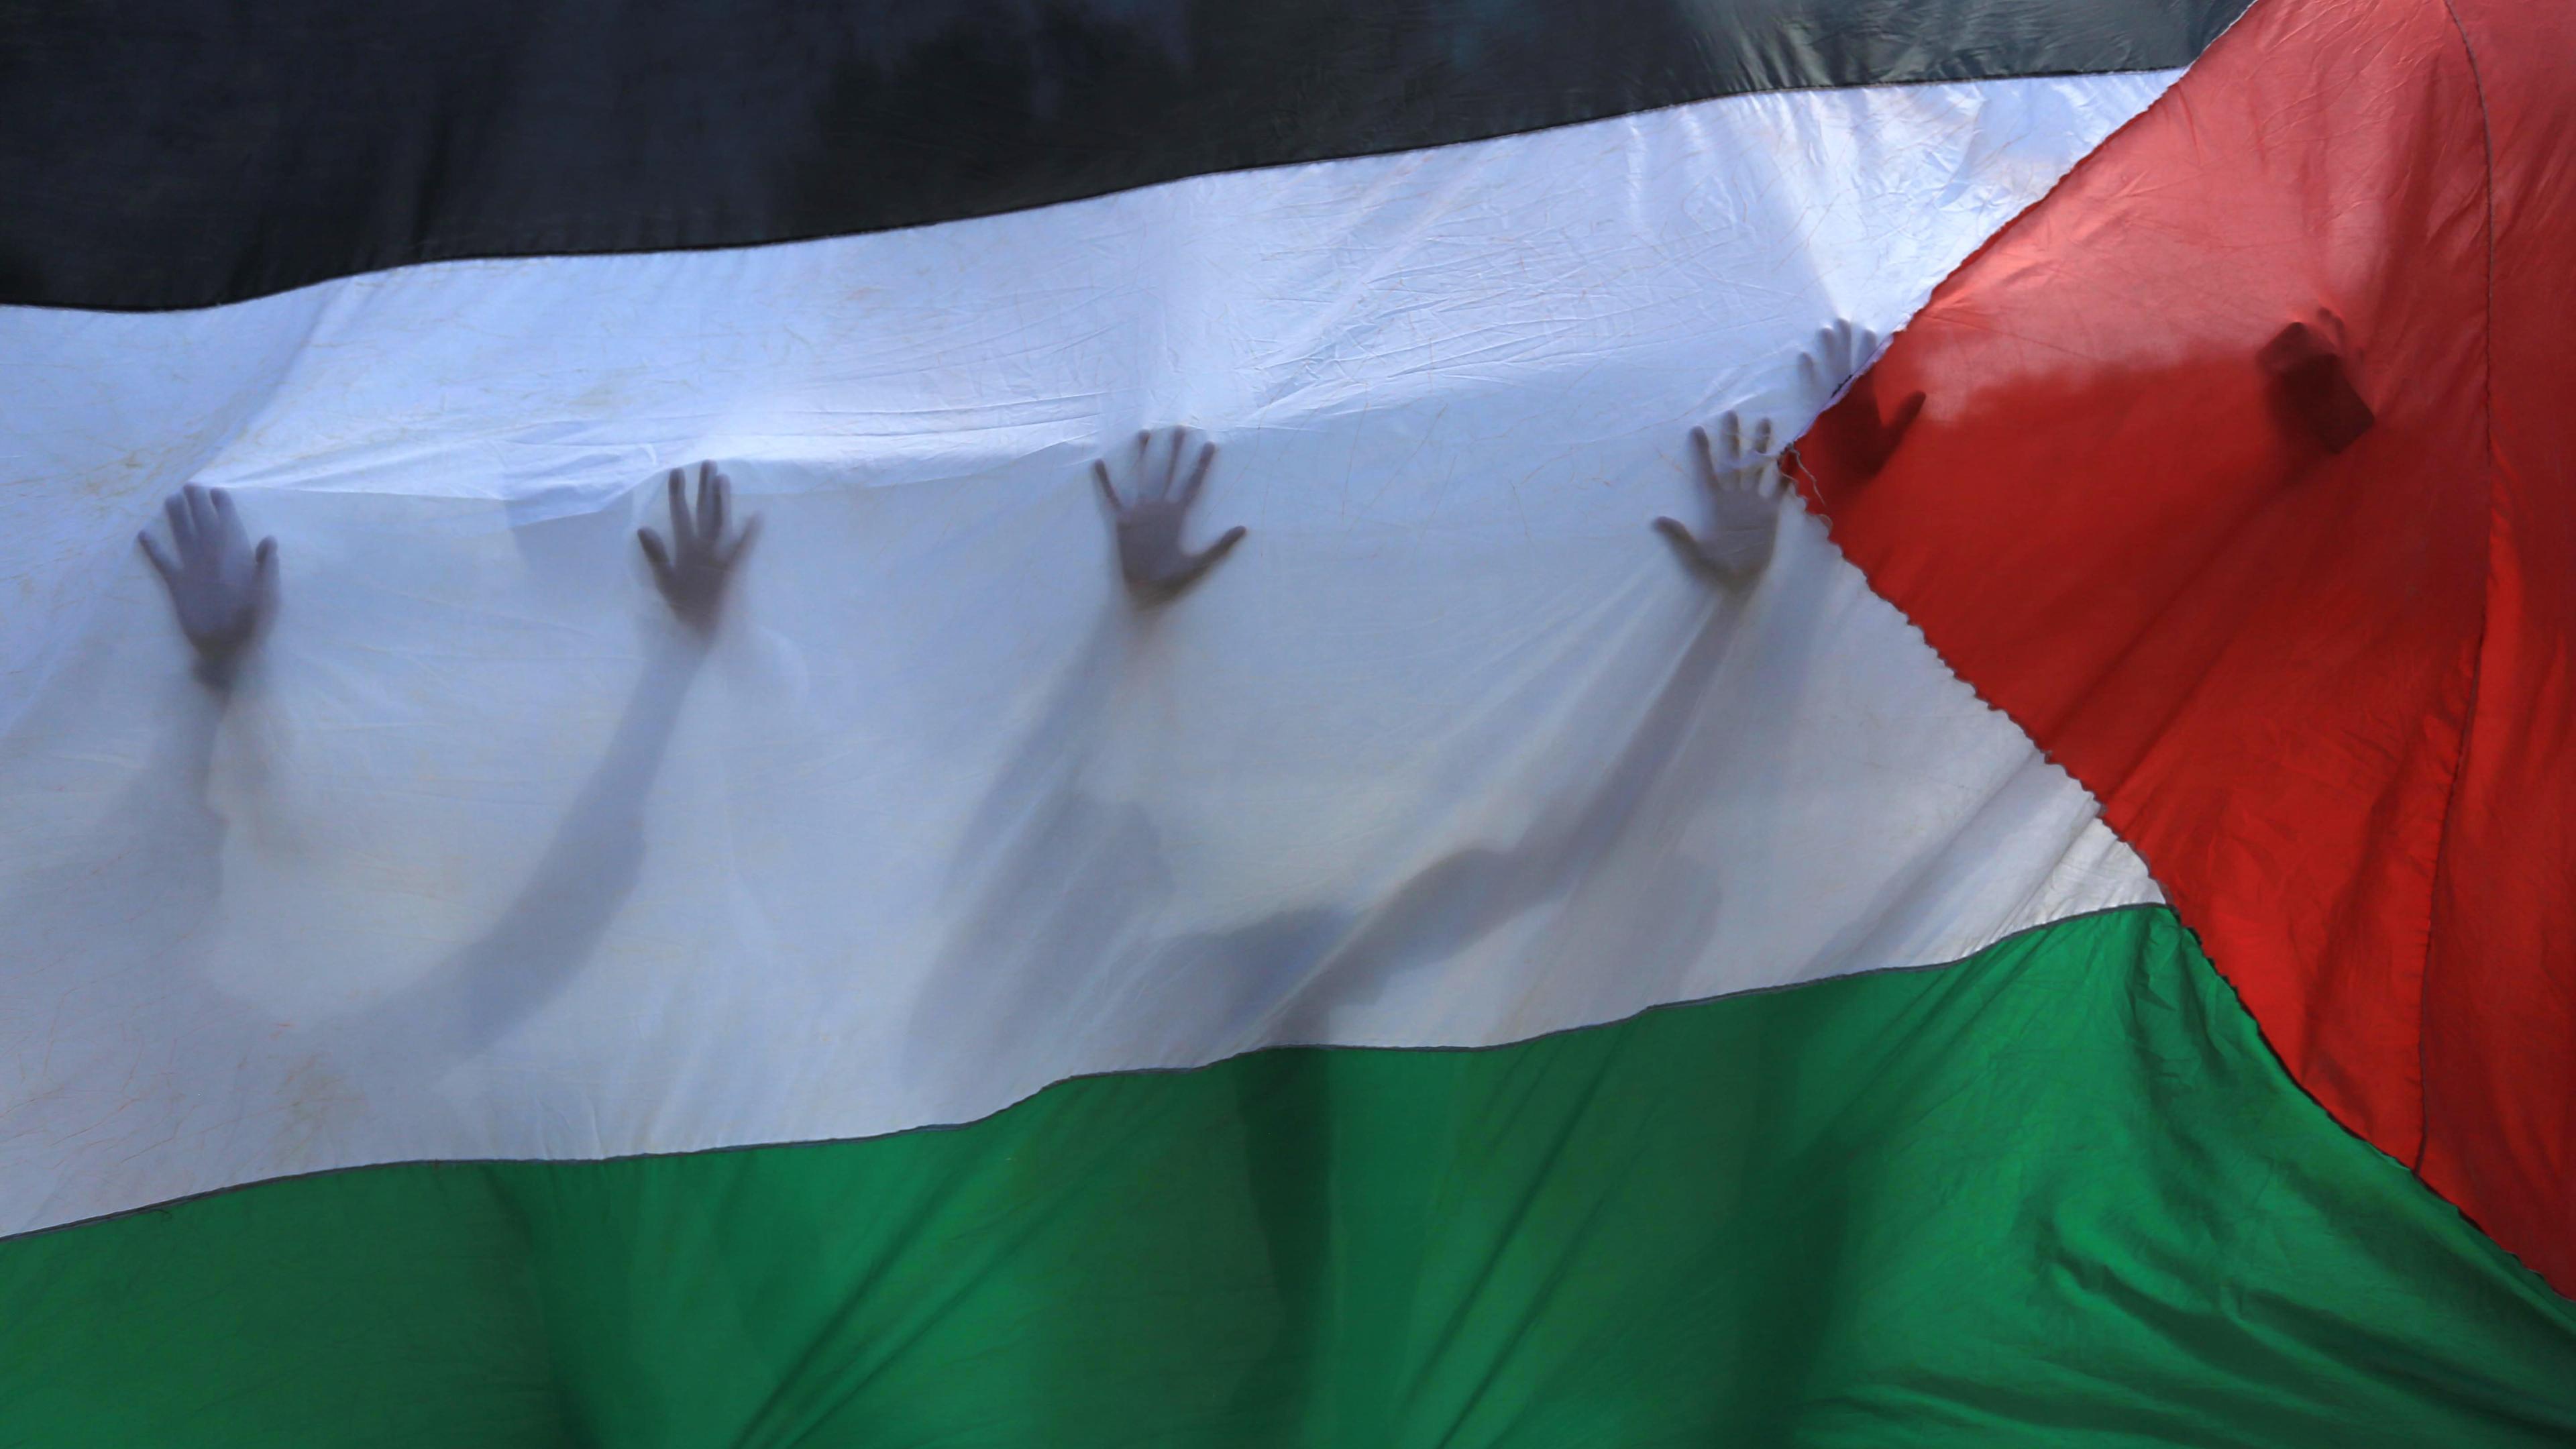  Palästinensische Gebiete, Khan Yunis: Palästinensische Freiwillige stehen hinter einer palästinensischen Fahne, durch die ihre Silhouetten zu erkennen sind.